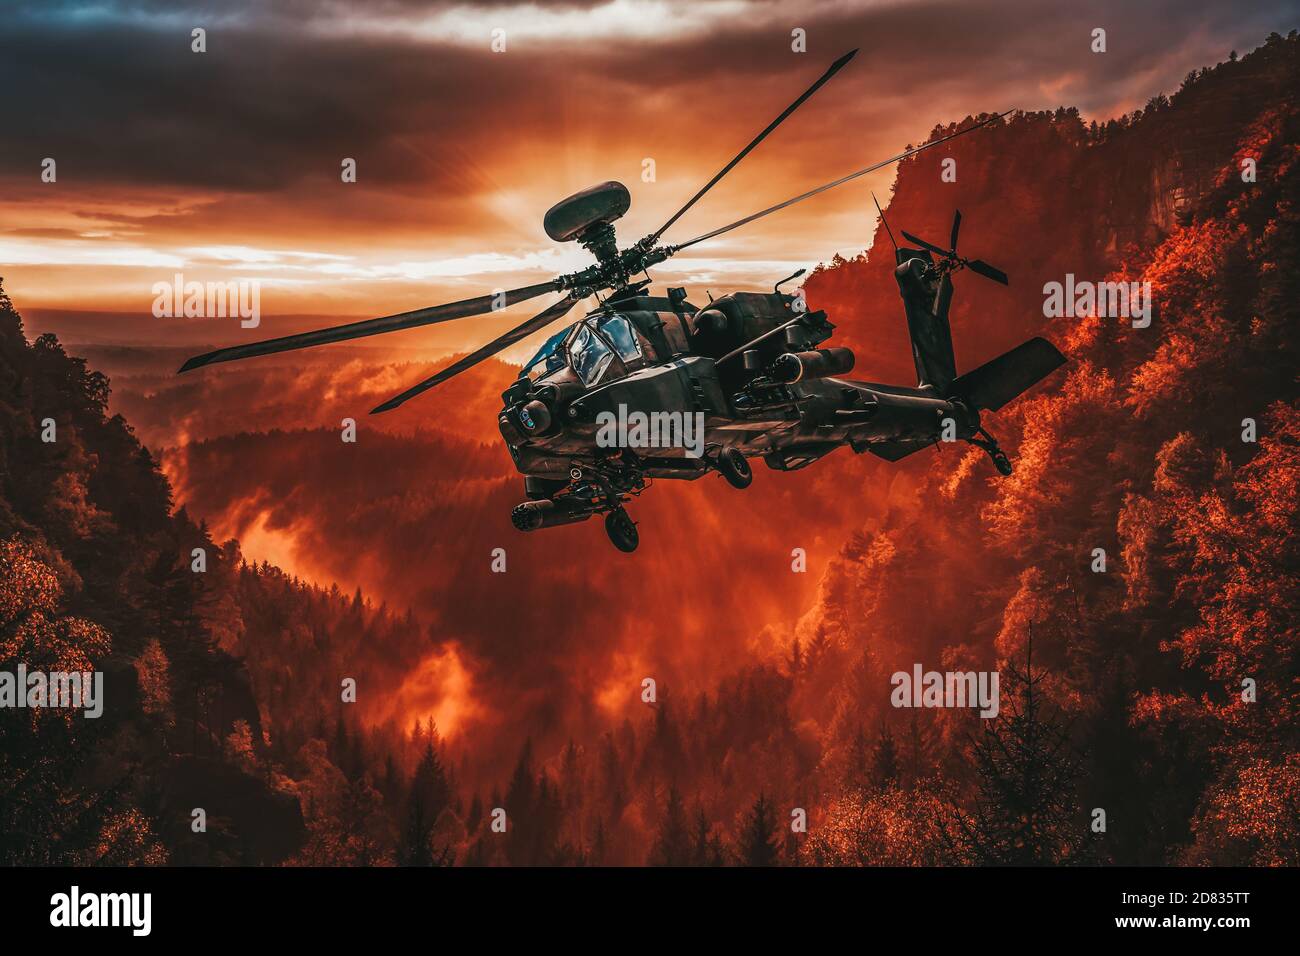 El helicóptero americano de ataque vuela sobre un hermoso paisaje Foto de stock